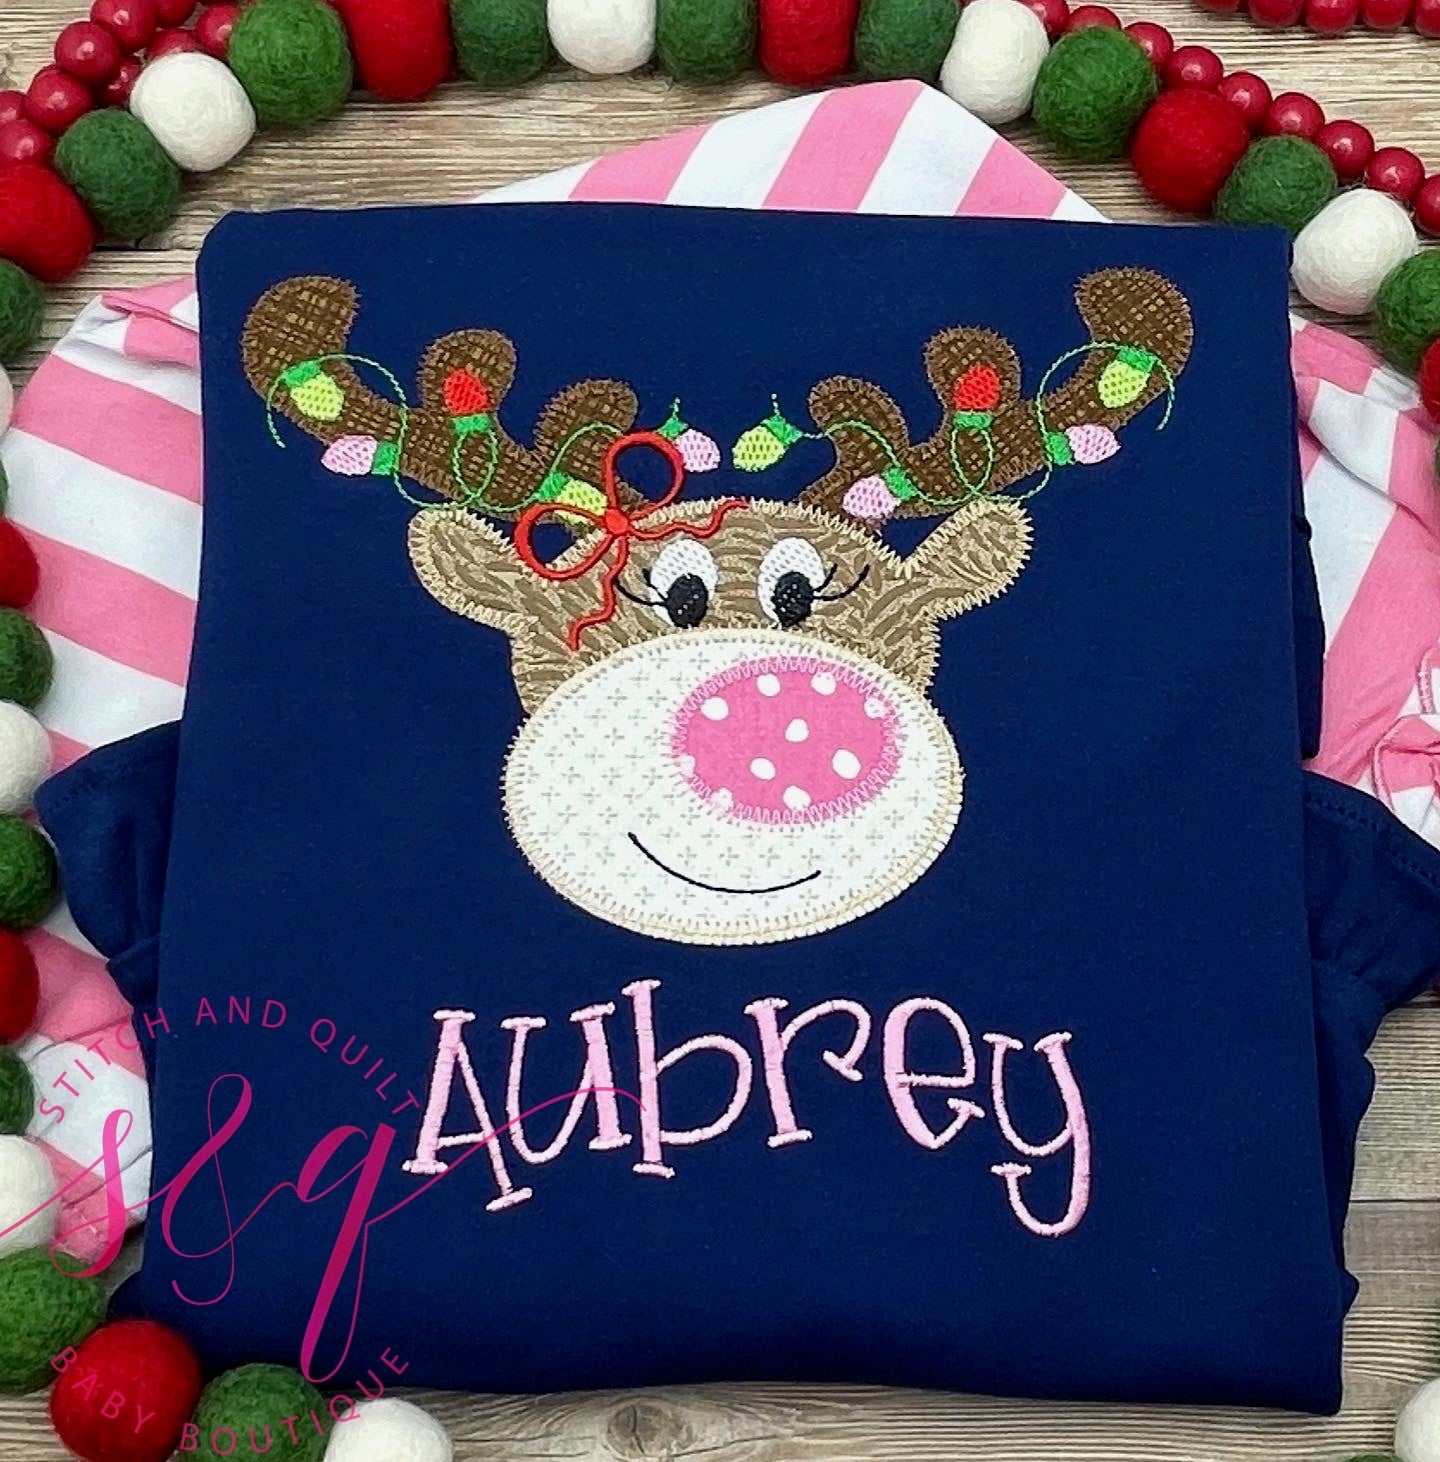 Christmas Shirt for Girl, Girl Toddler Christmas outfit, Personalized Christmas Shirt, Infant Baby Christmas, Girls Christmas Top